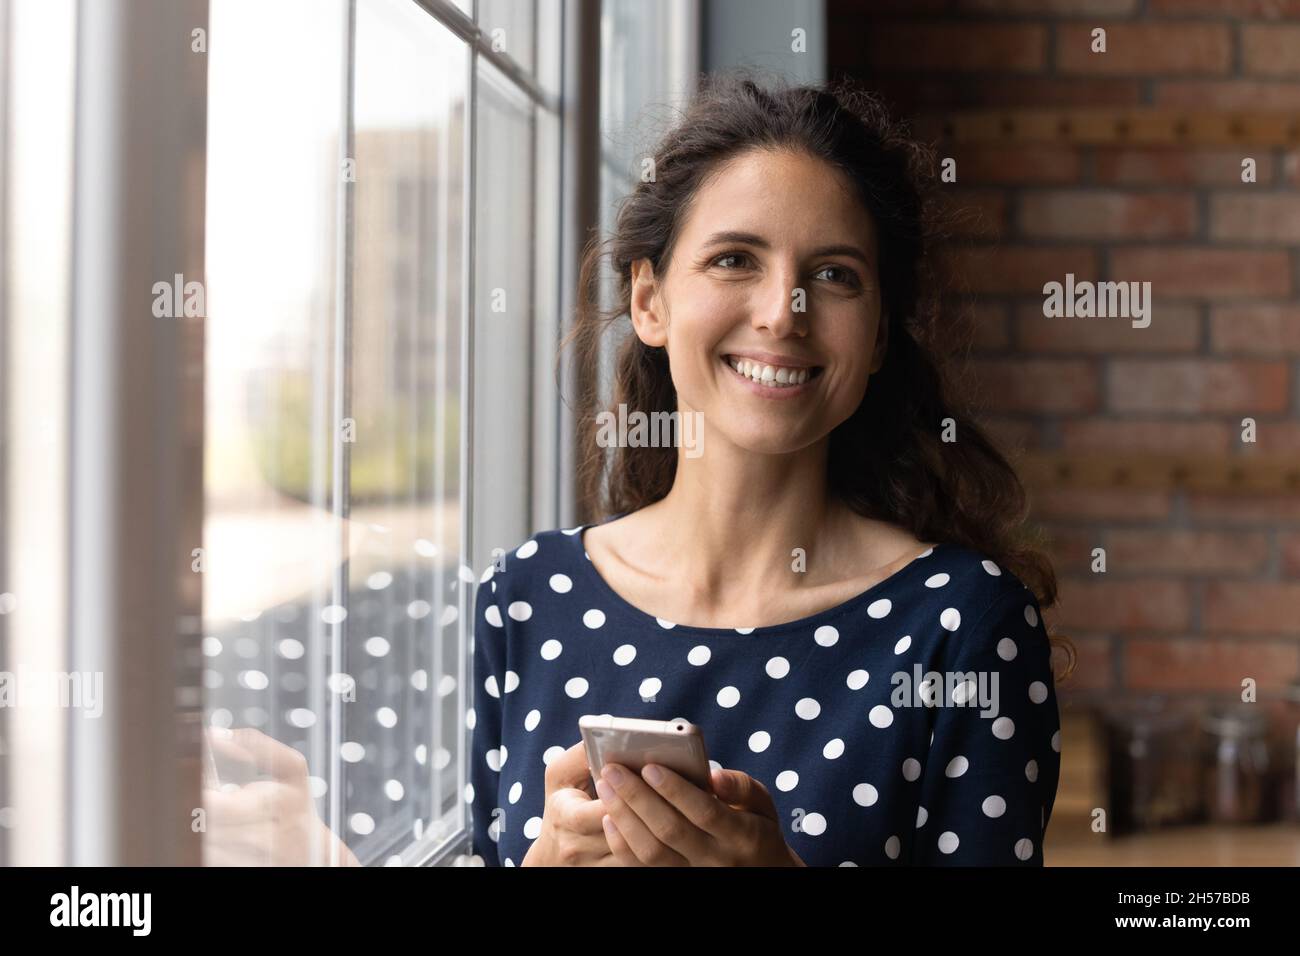 Une dame latine joyeuse tenant un smartphone semble distrait de l'écran Banque D'Images